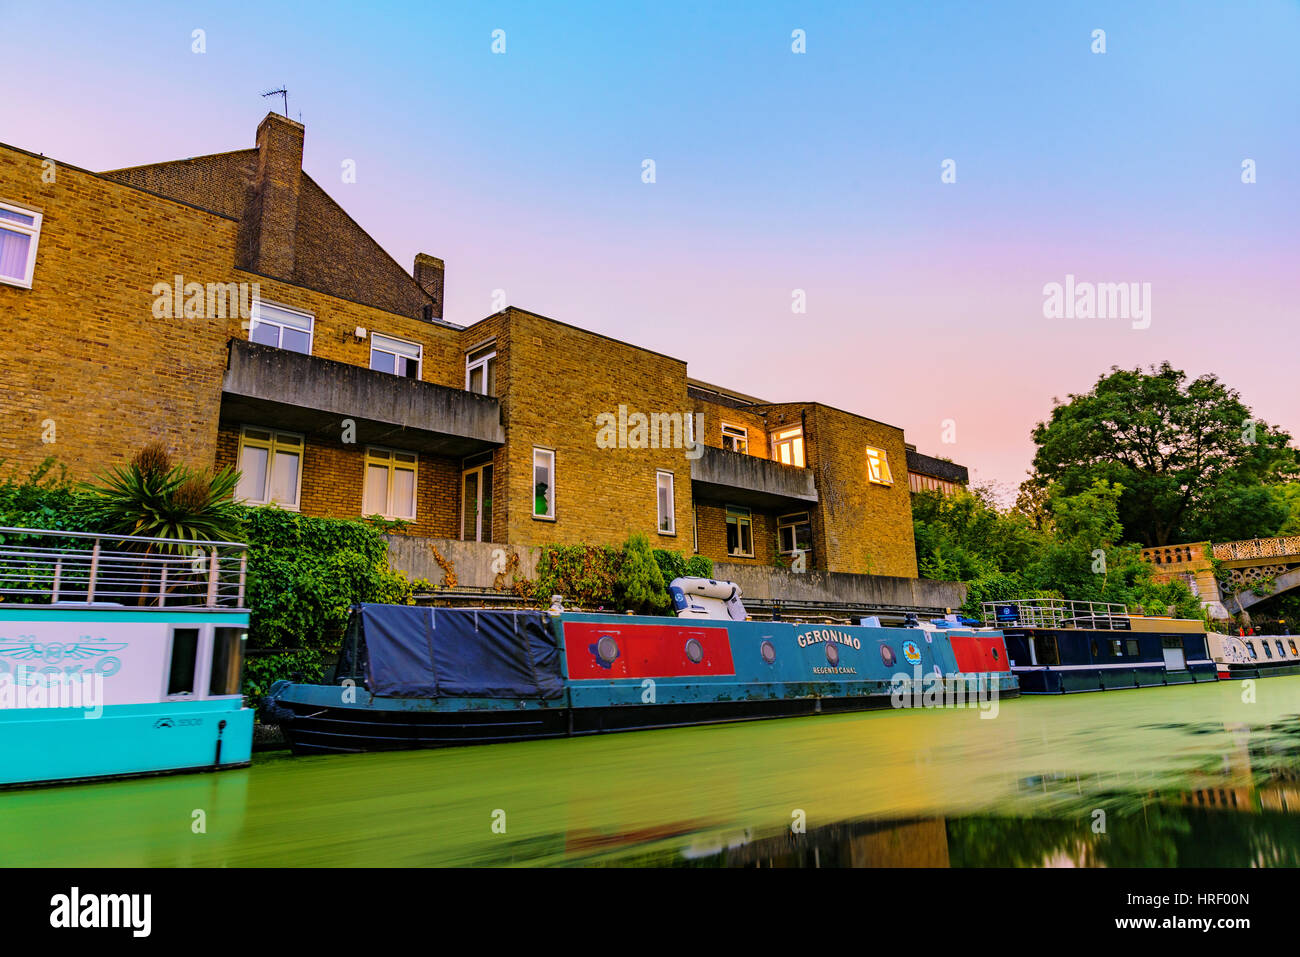 Londres - le 16 juillet 2016 : Riverside Apartments avec maisons de bateau de nuit le long du canal Regents Park qui est un célèbre sur la voie navigable, juillet 2016 à Londres. Banque D'Images